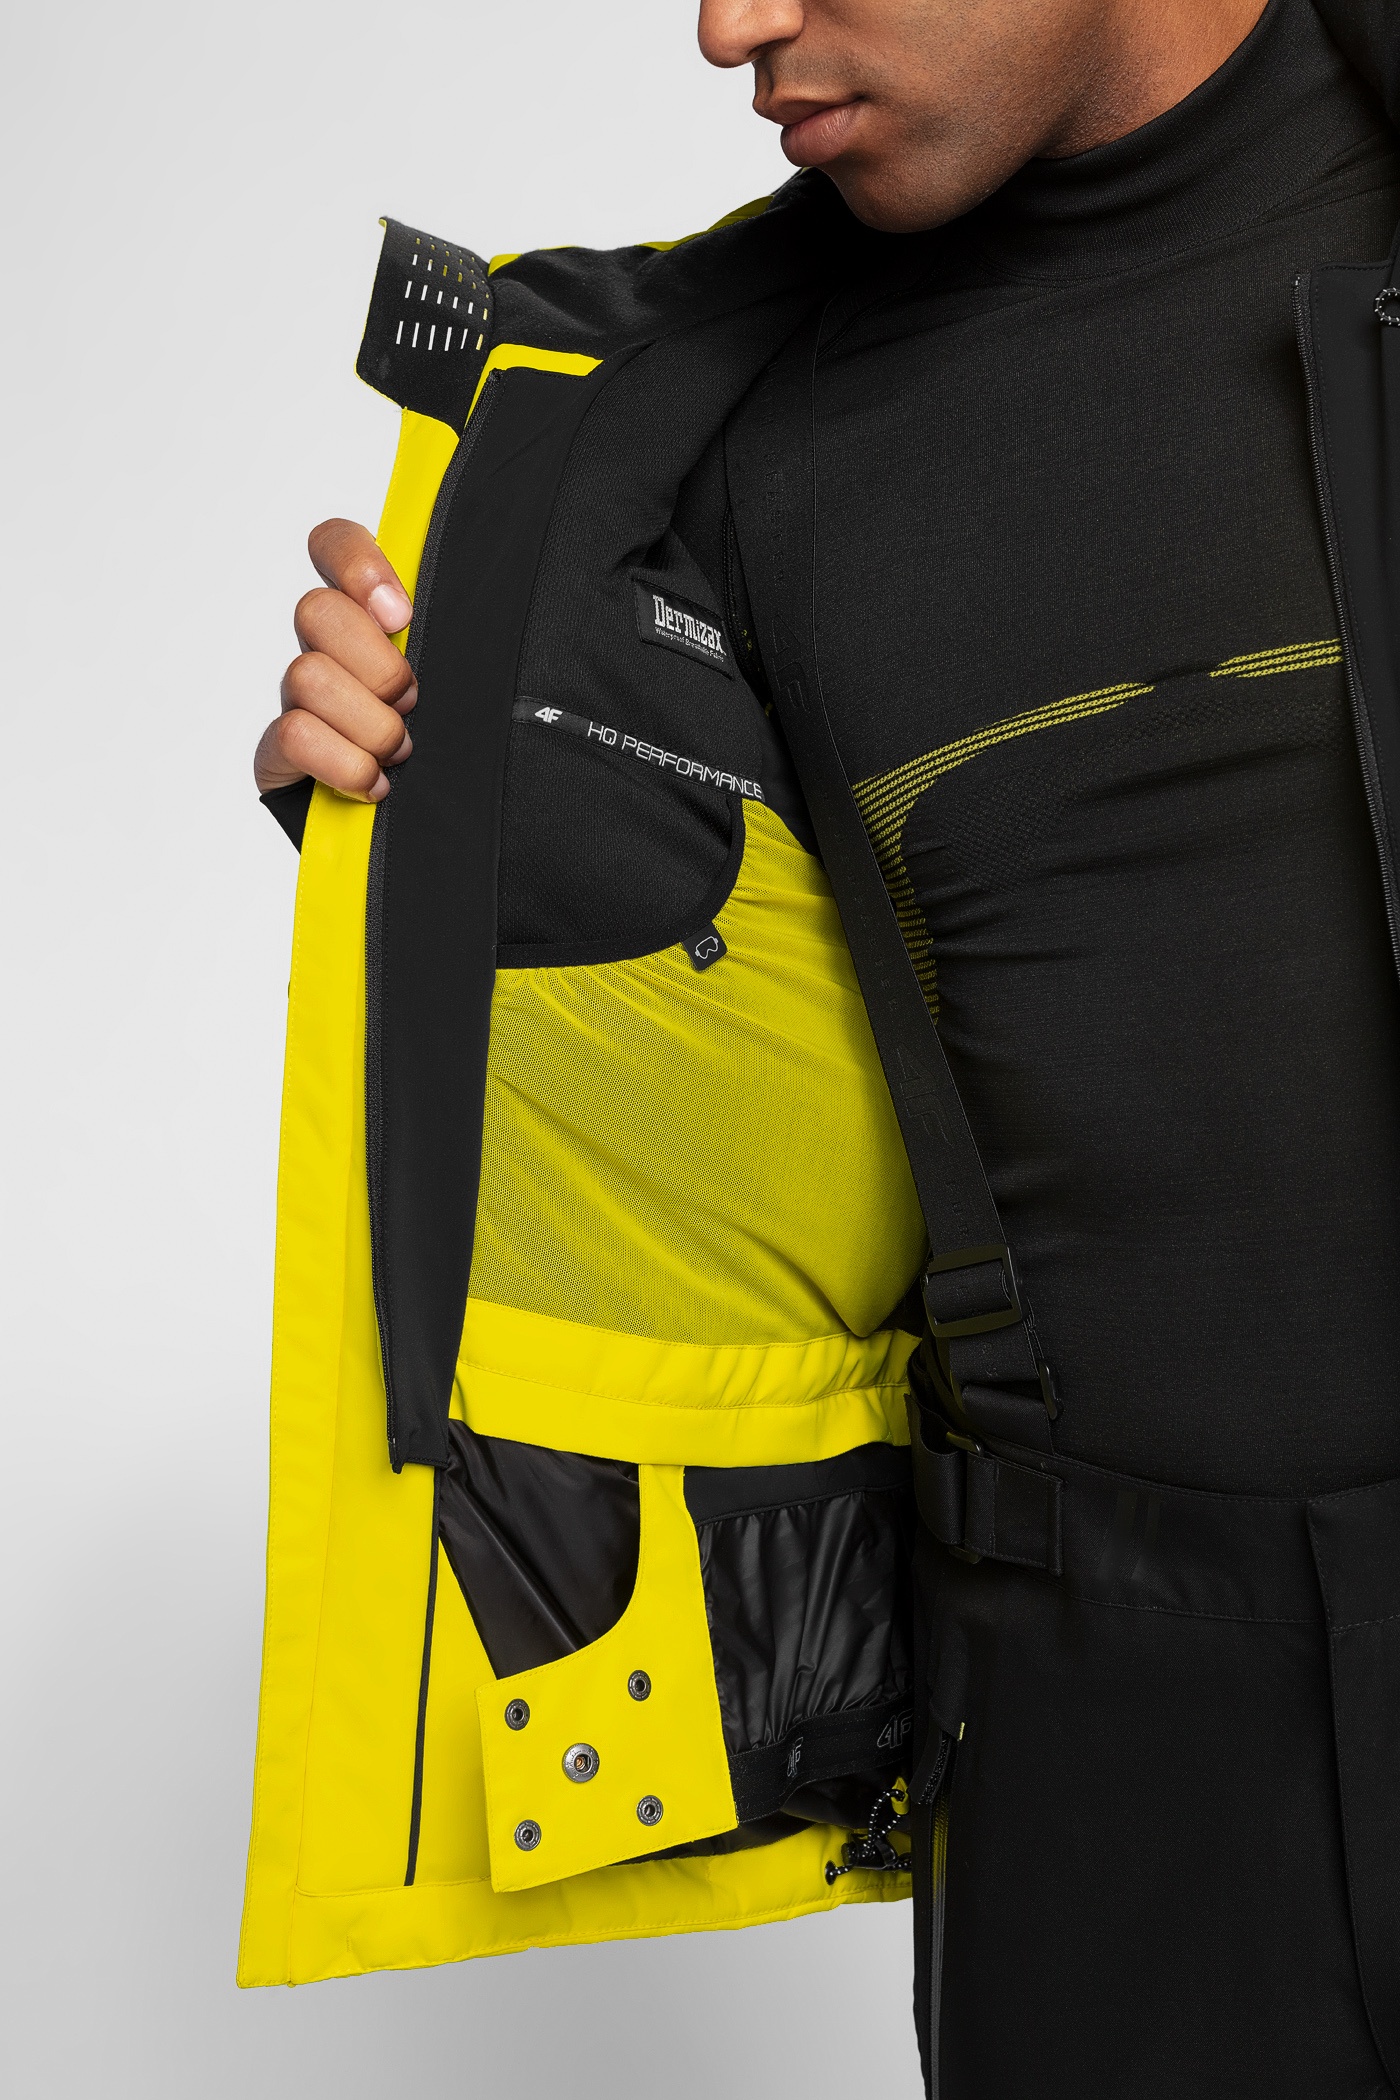 Geci Ski & Snow -  4f Men Ski Jacket KUMN153